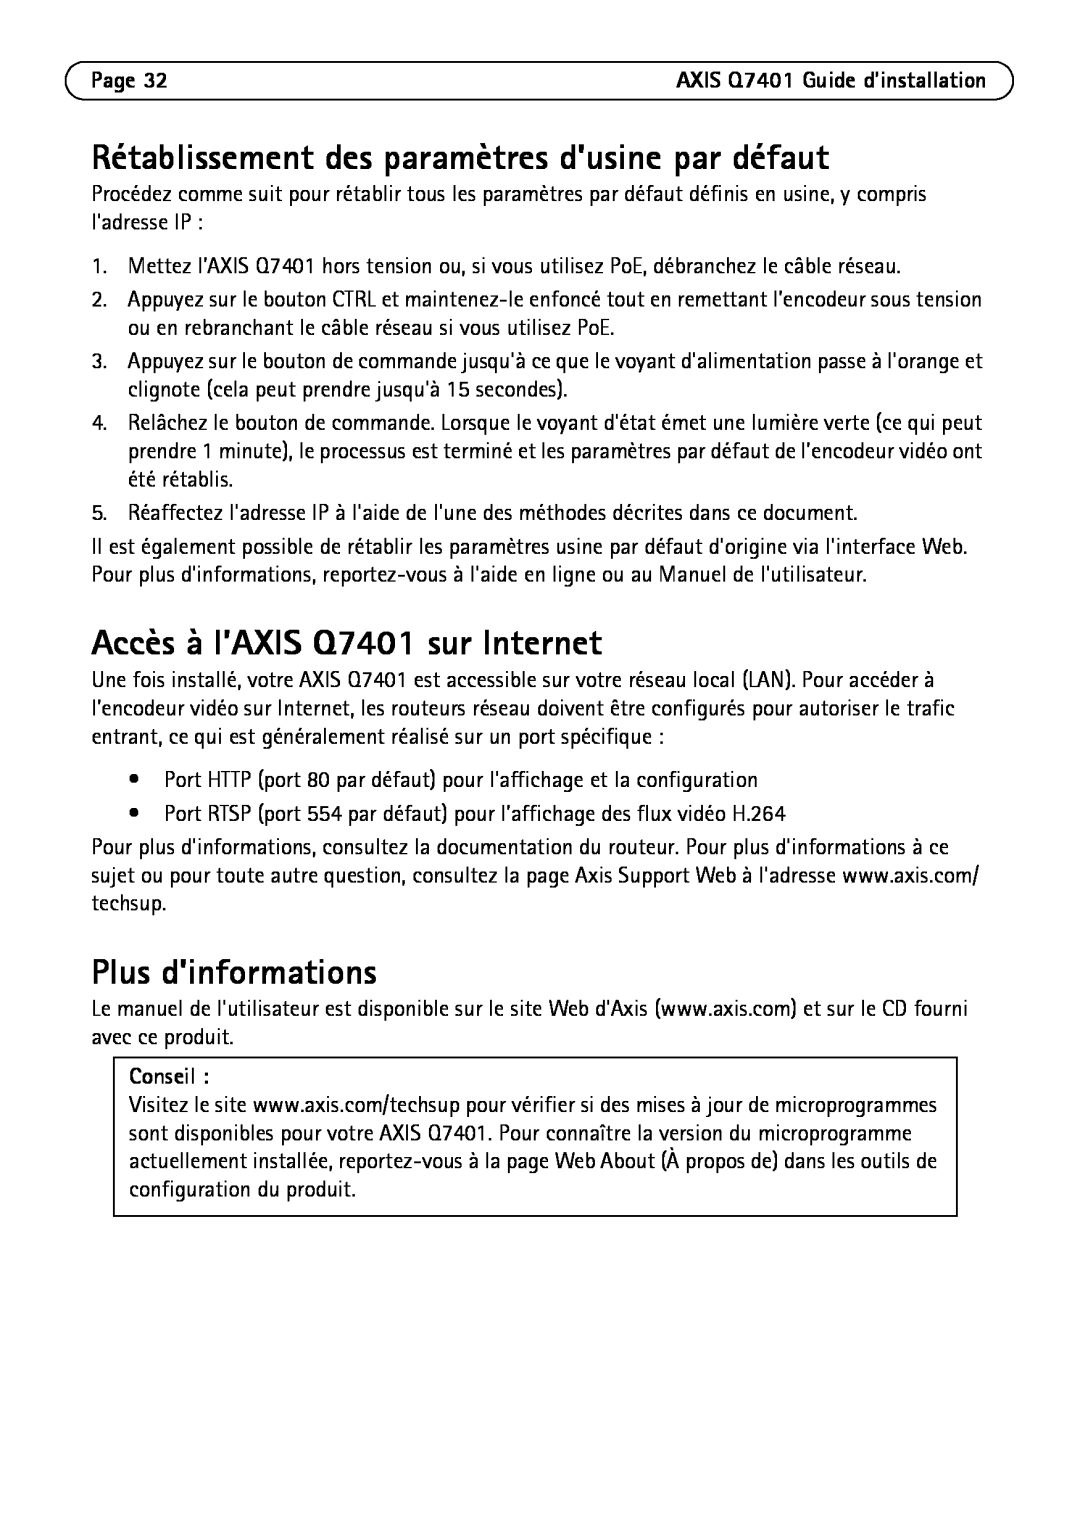 Axis Communications Rétablissement des paramètres dusine par défaut, Accès à l’AXIS Q7401 sur Internet, Page, Conseil 